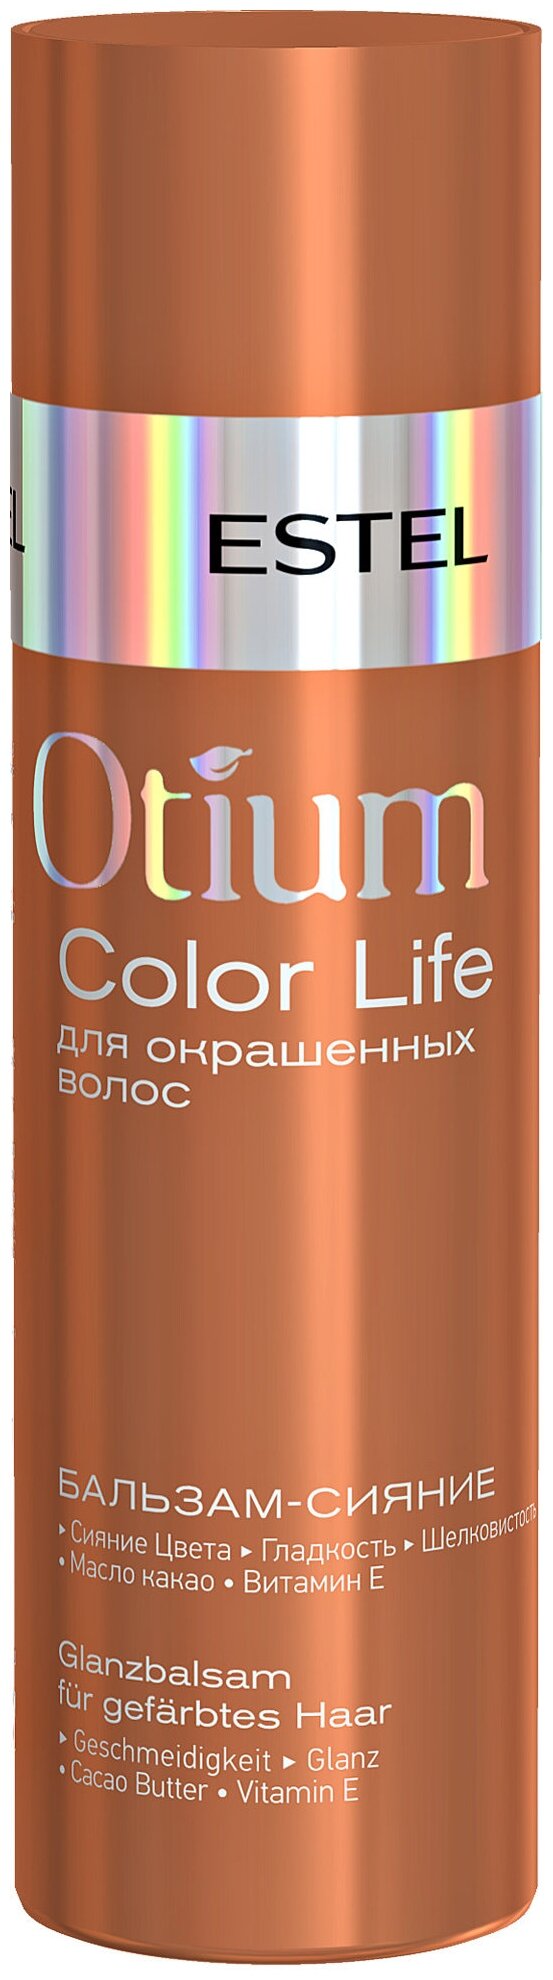 Estel Professional Бальзам-сияние для окрашенных волос OTIUM COLOR LIFE, 200 мл